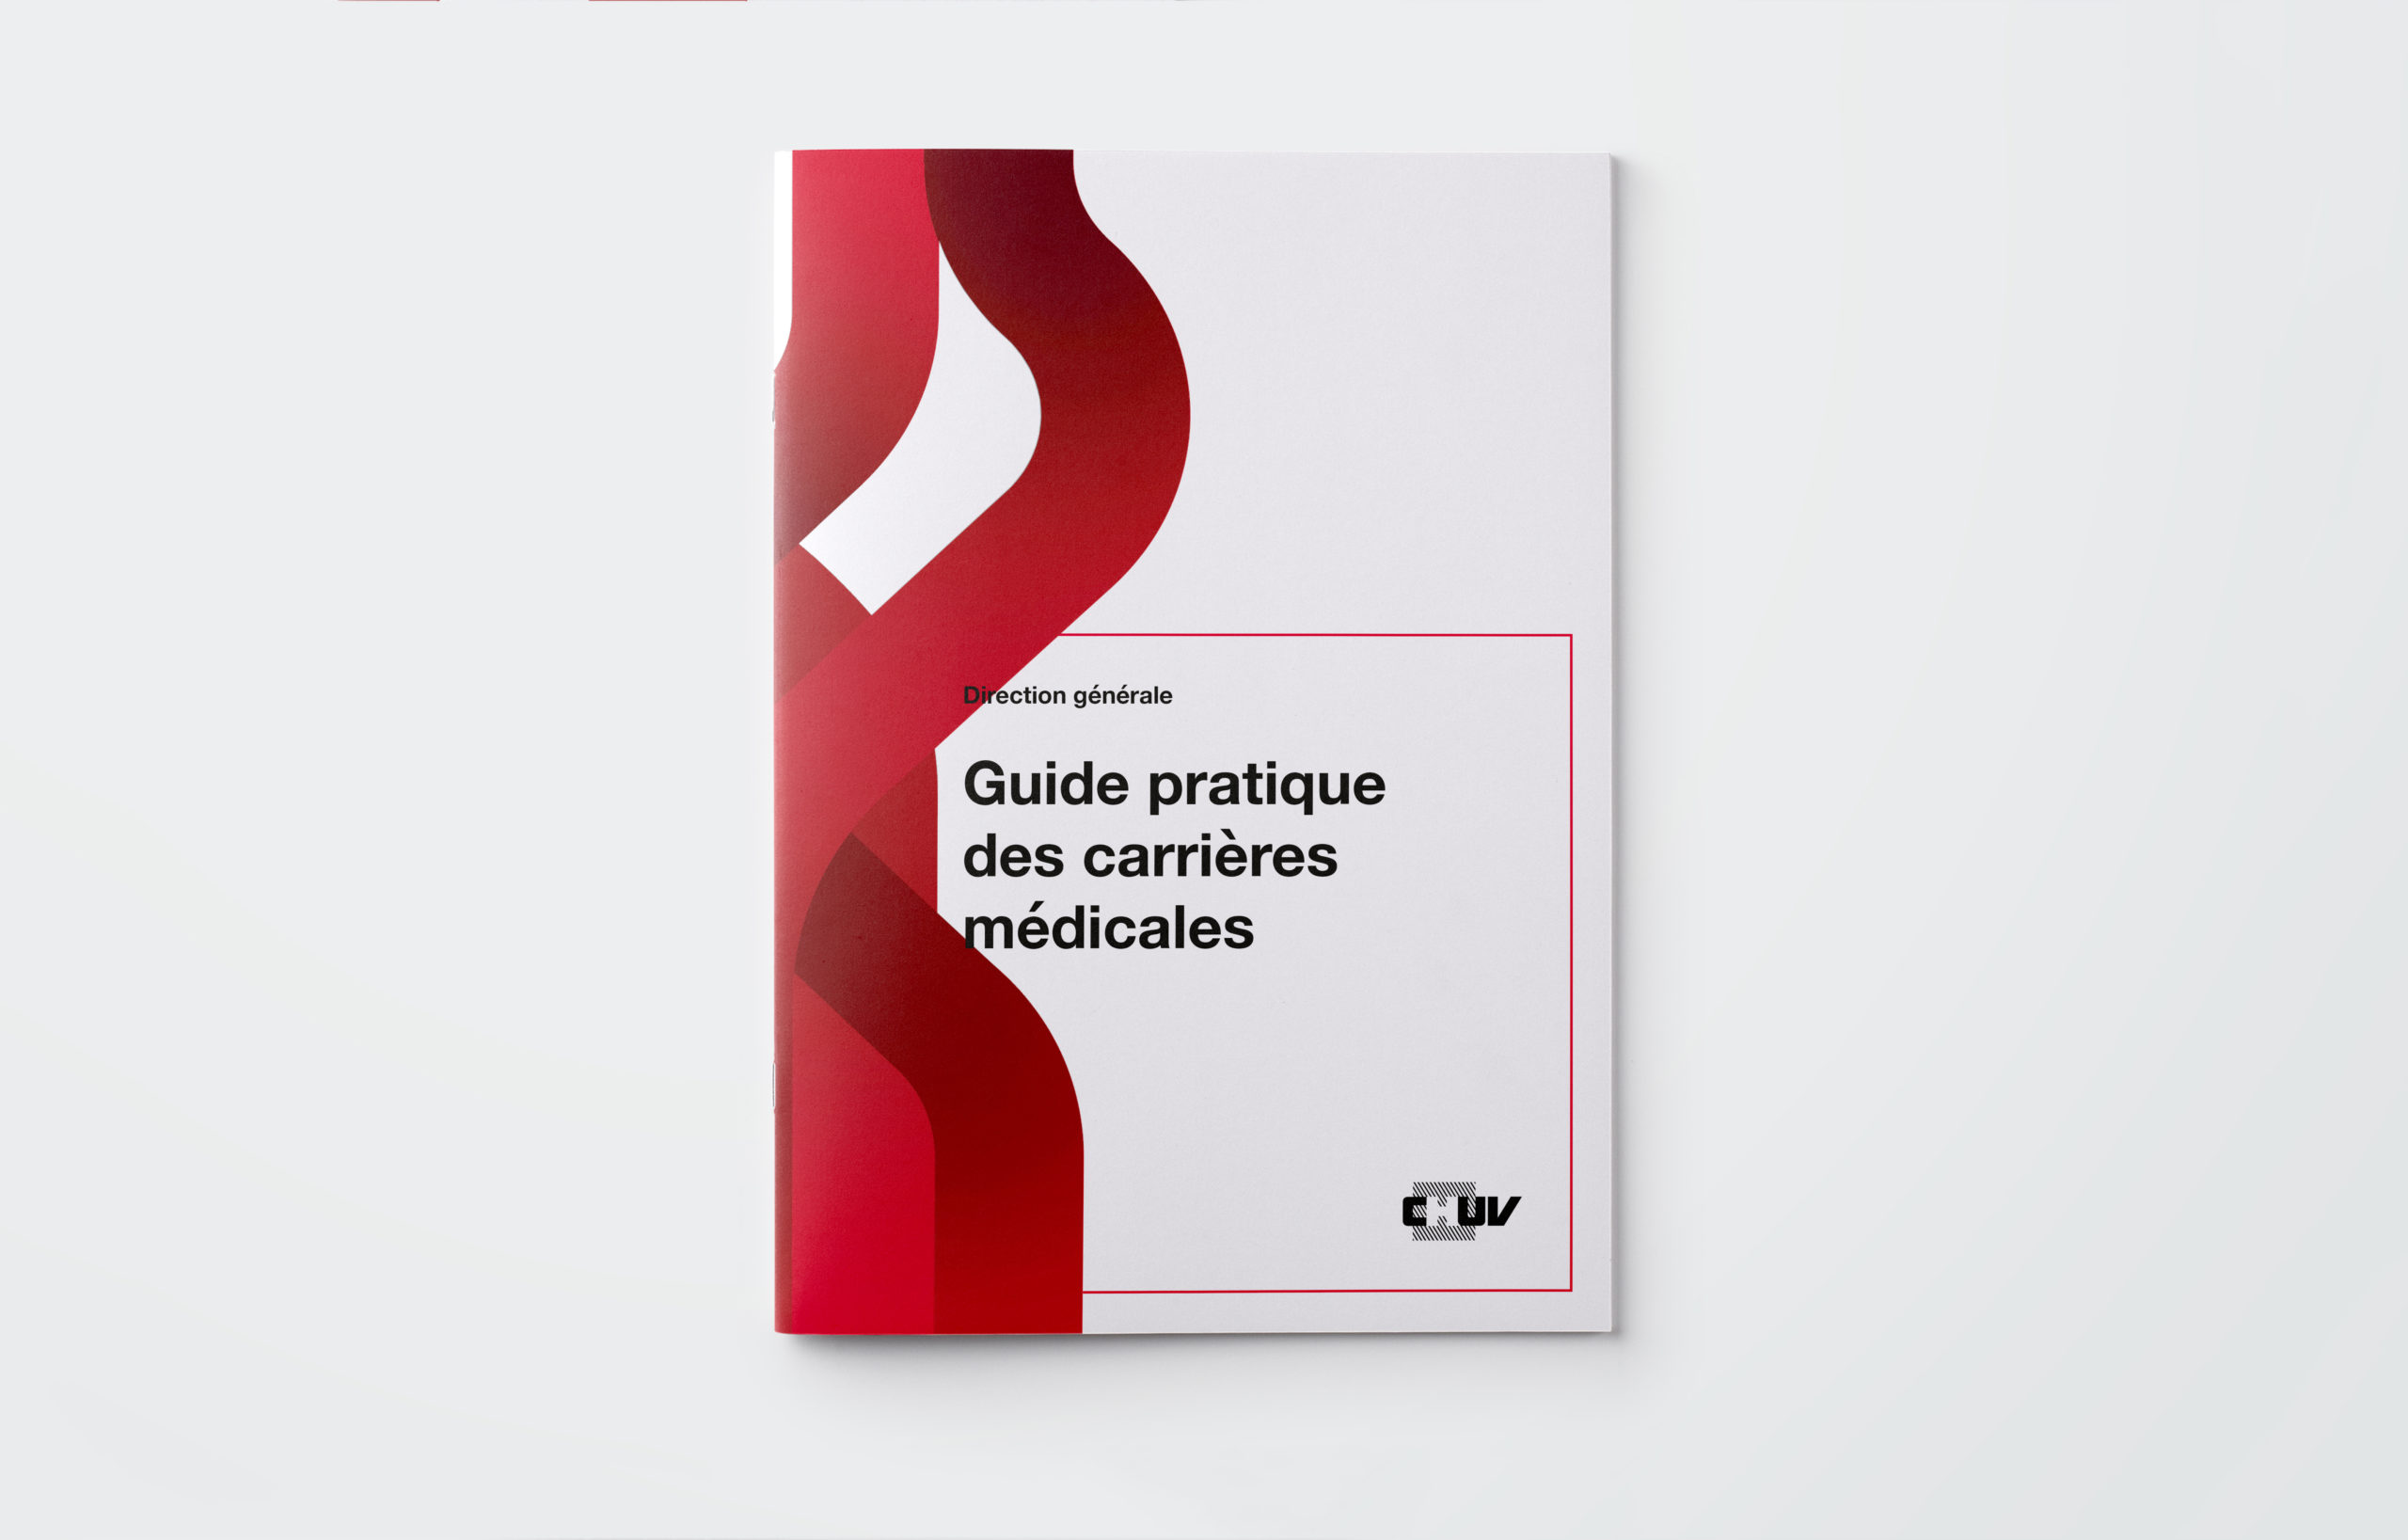 Couverture de la brochure "Guide pratique des carrières médicales"